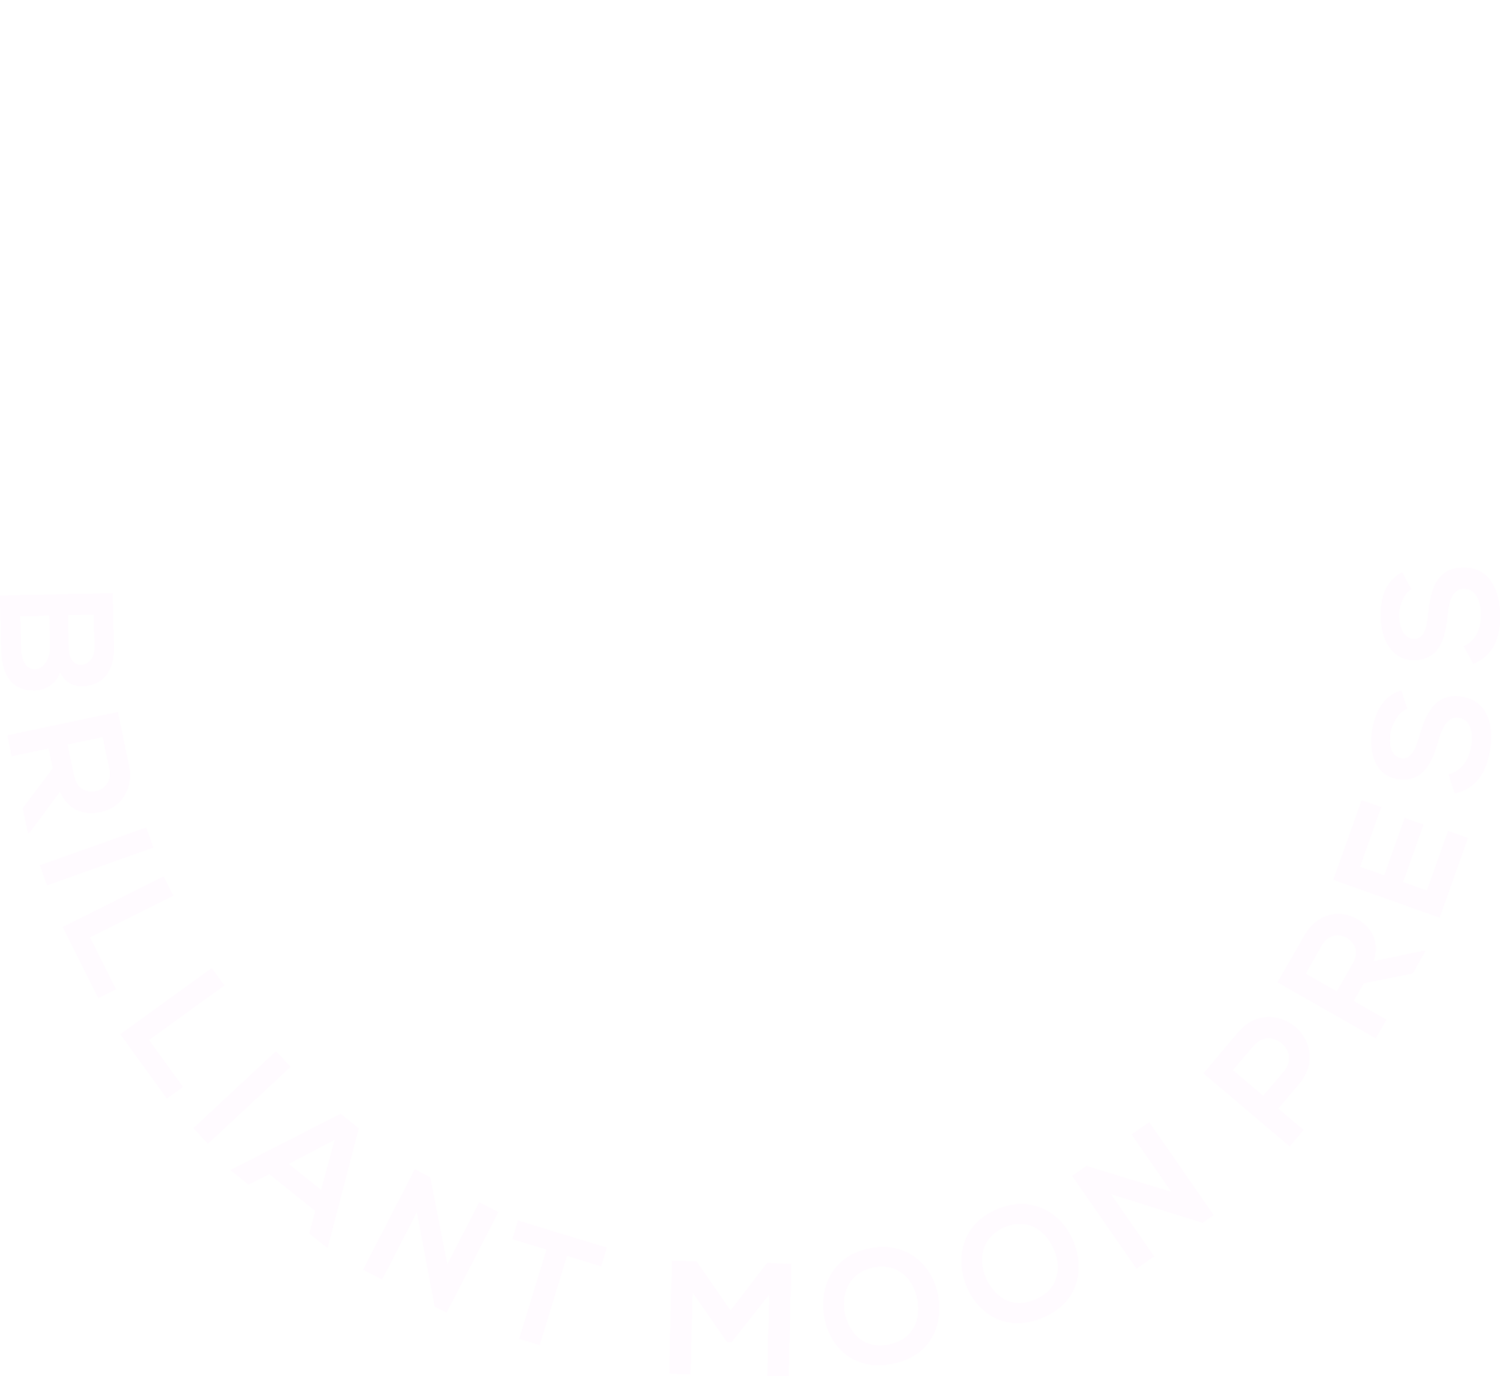 Brilliant Moon Press